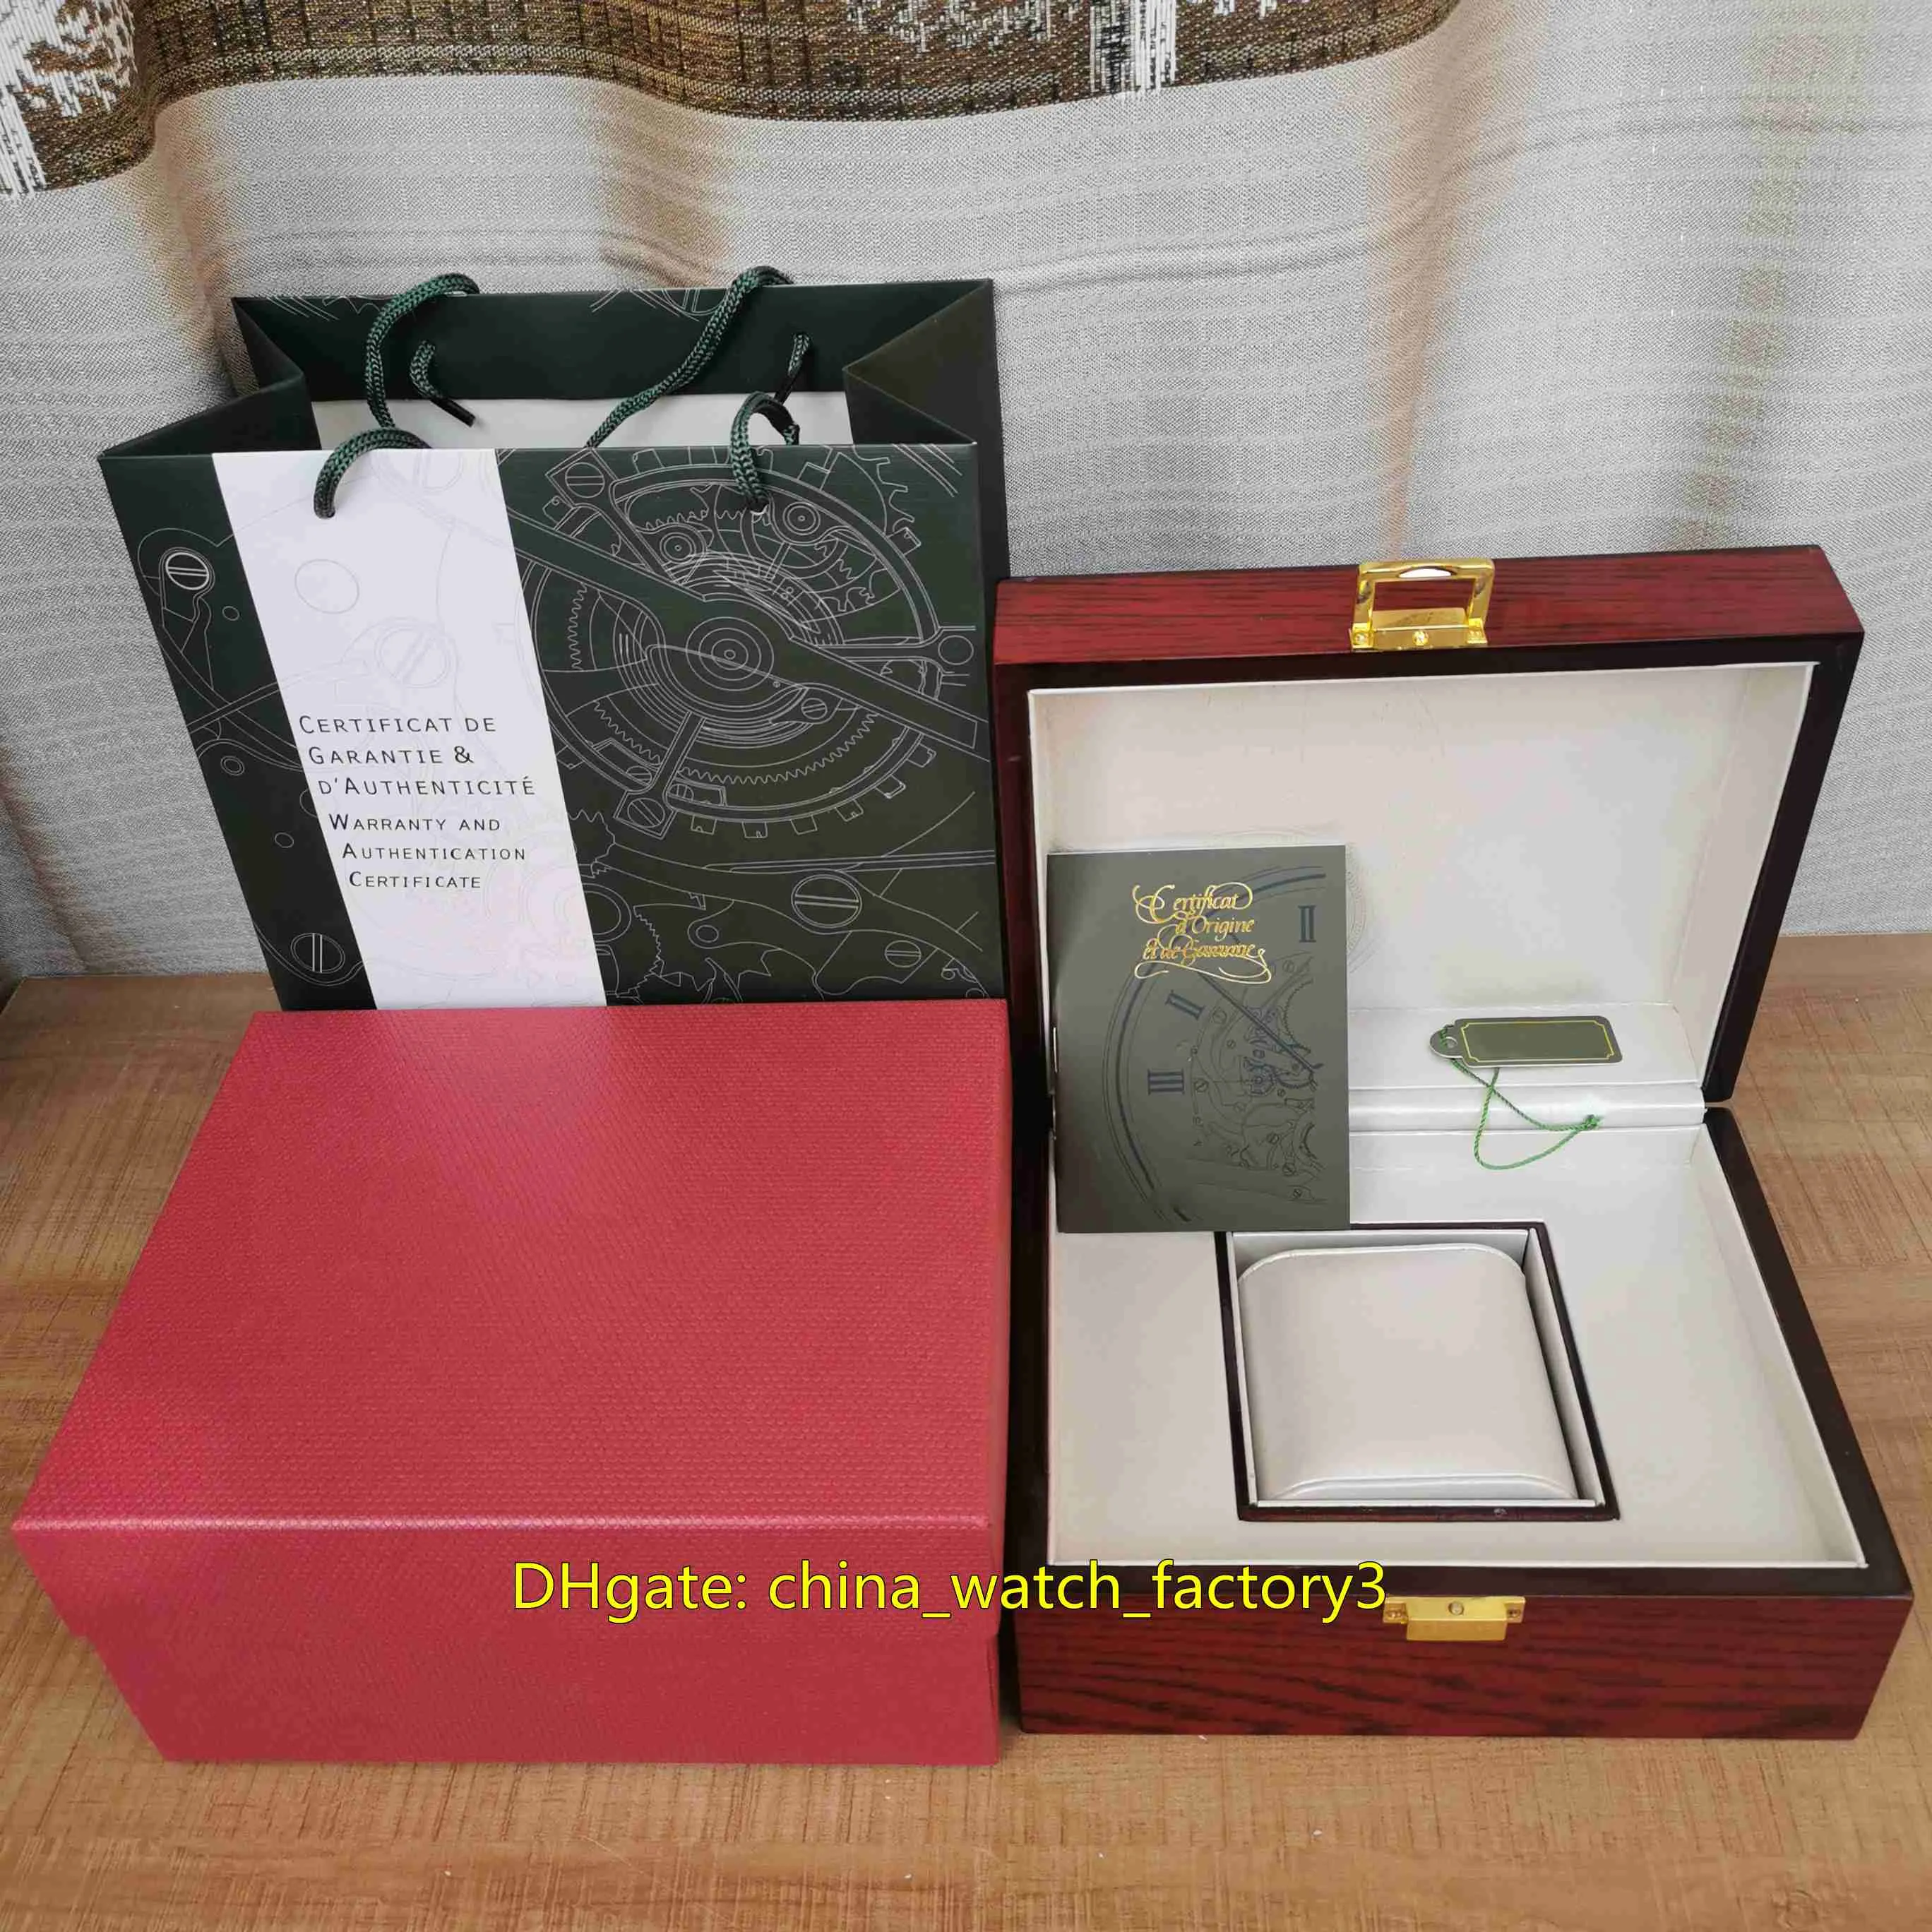 Verkoop van hoge kwaliteit Royal Oak Offshore horloges dozen hout lederen horloge originele doos papieren slot rode handtas 20 mm x 16 mm voor 274M217f